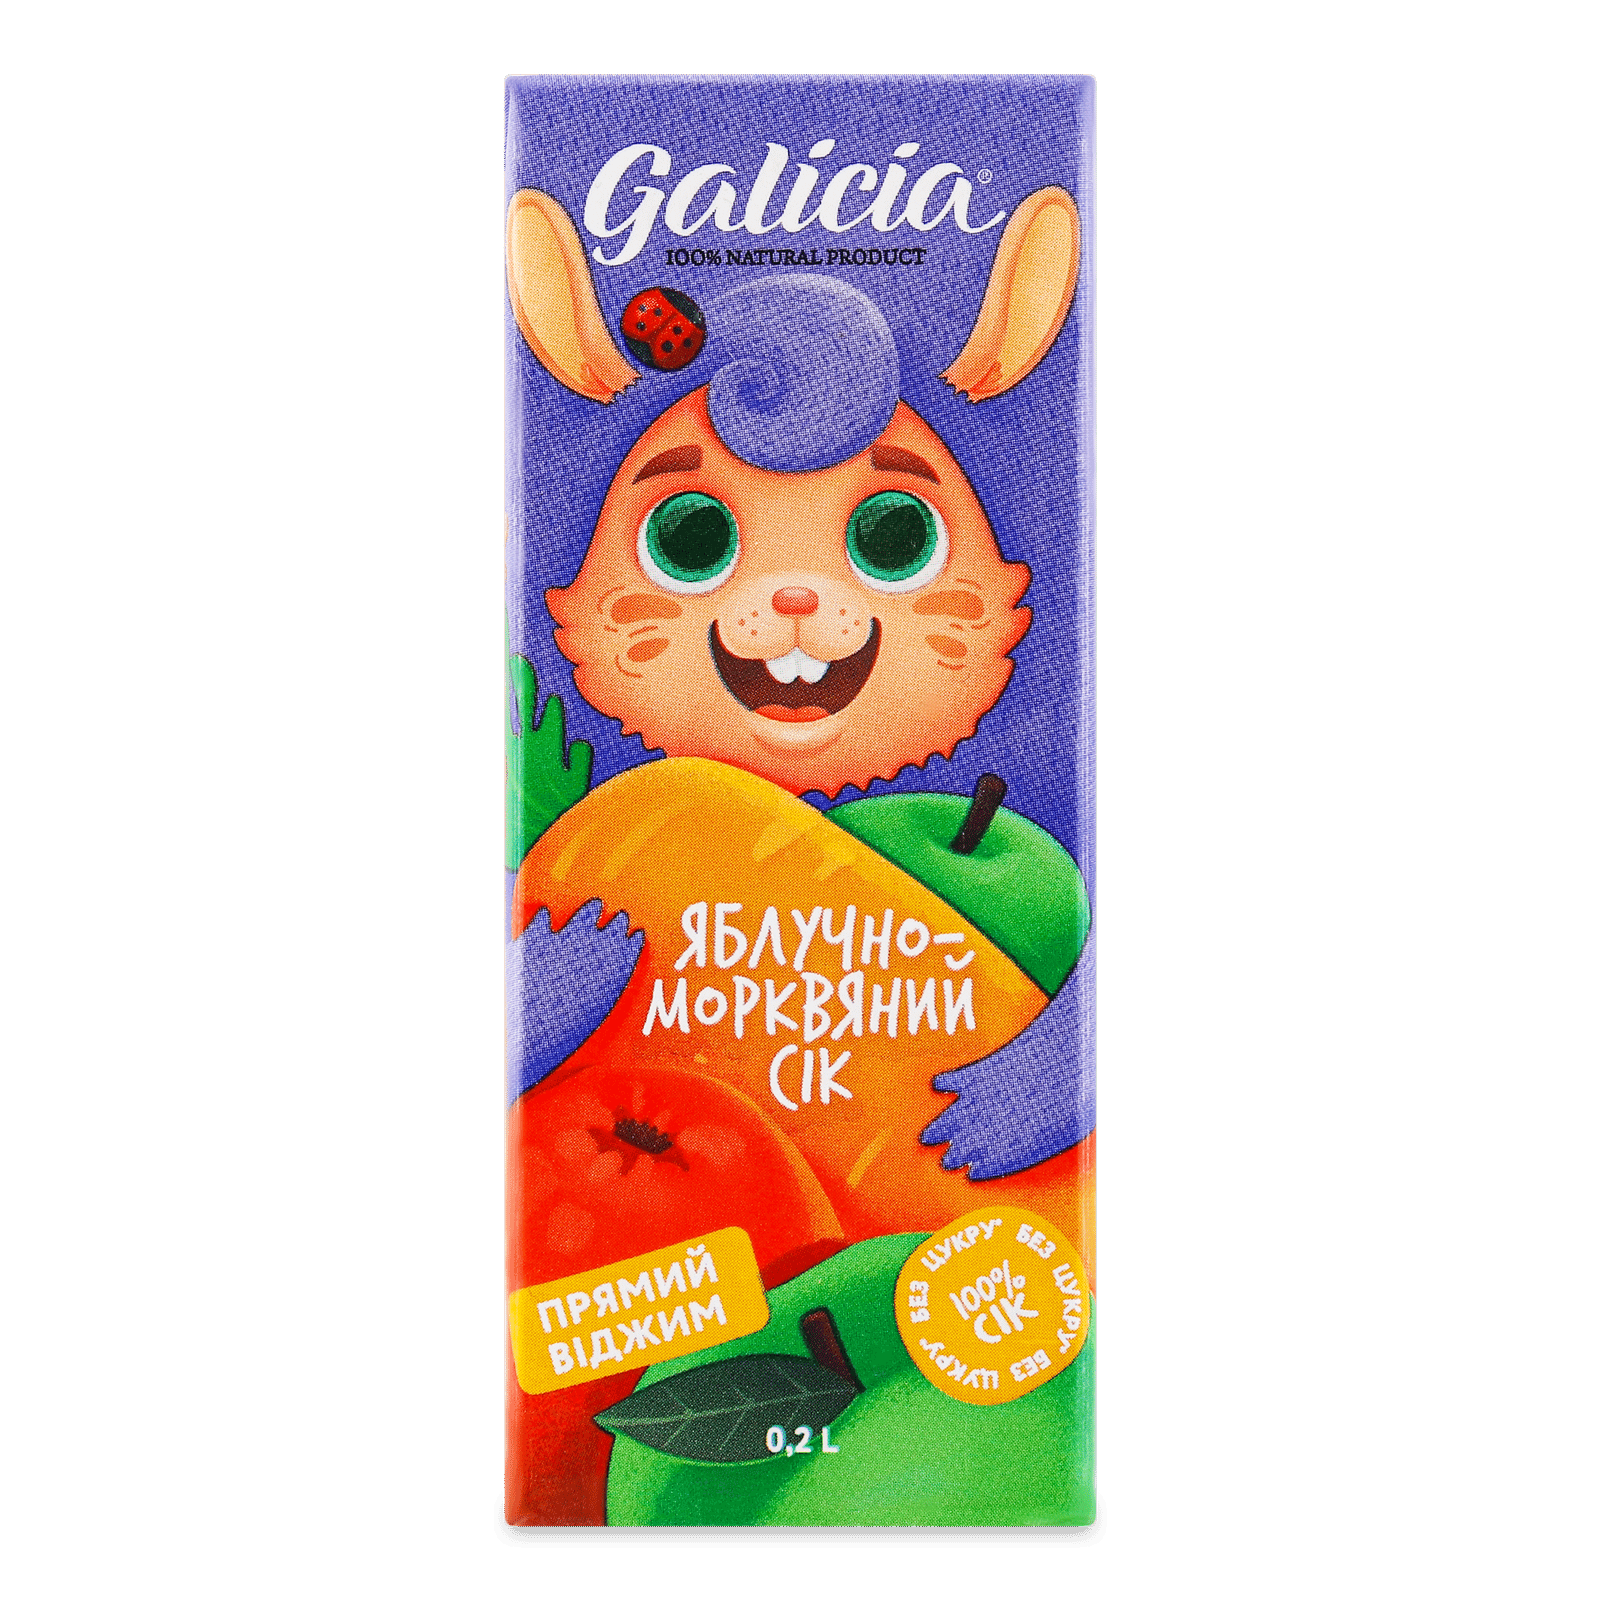 Сік Galicia яблучно-морквяний - 1